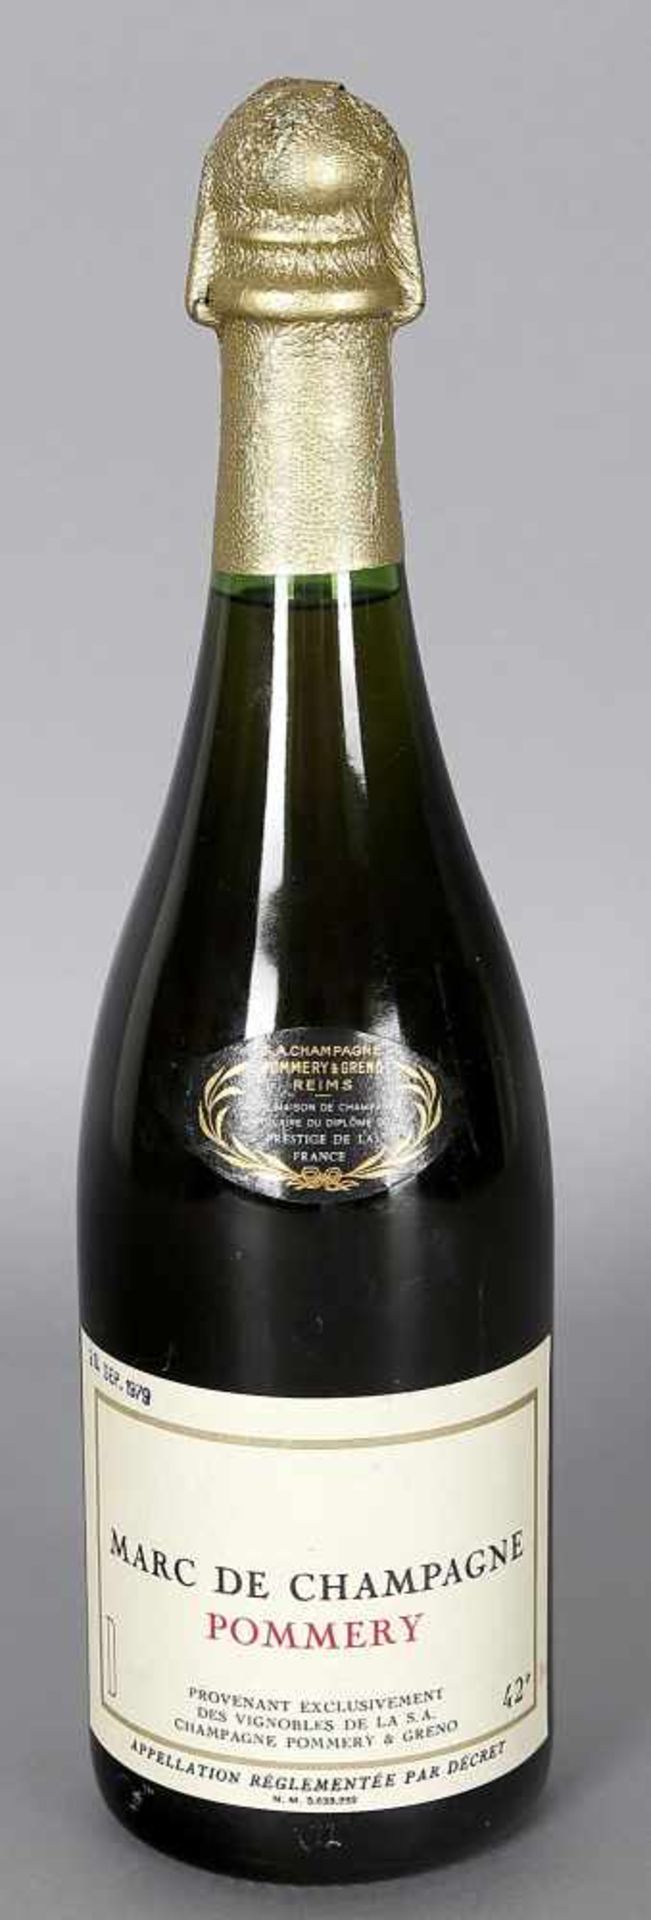 Marc de Champagne Pommery, Pommery & Greno0,75 ltr., 42 Vol. %, gestempelt 26. Sept. 1979, gute